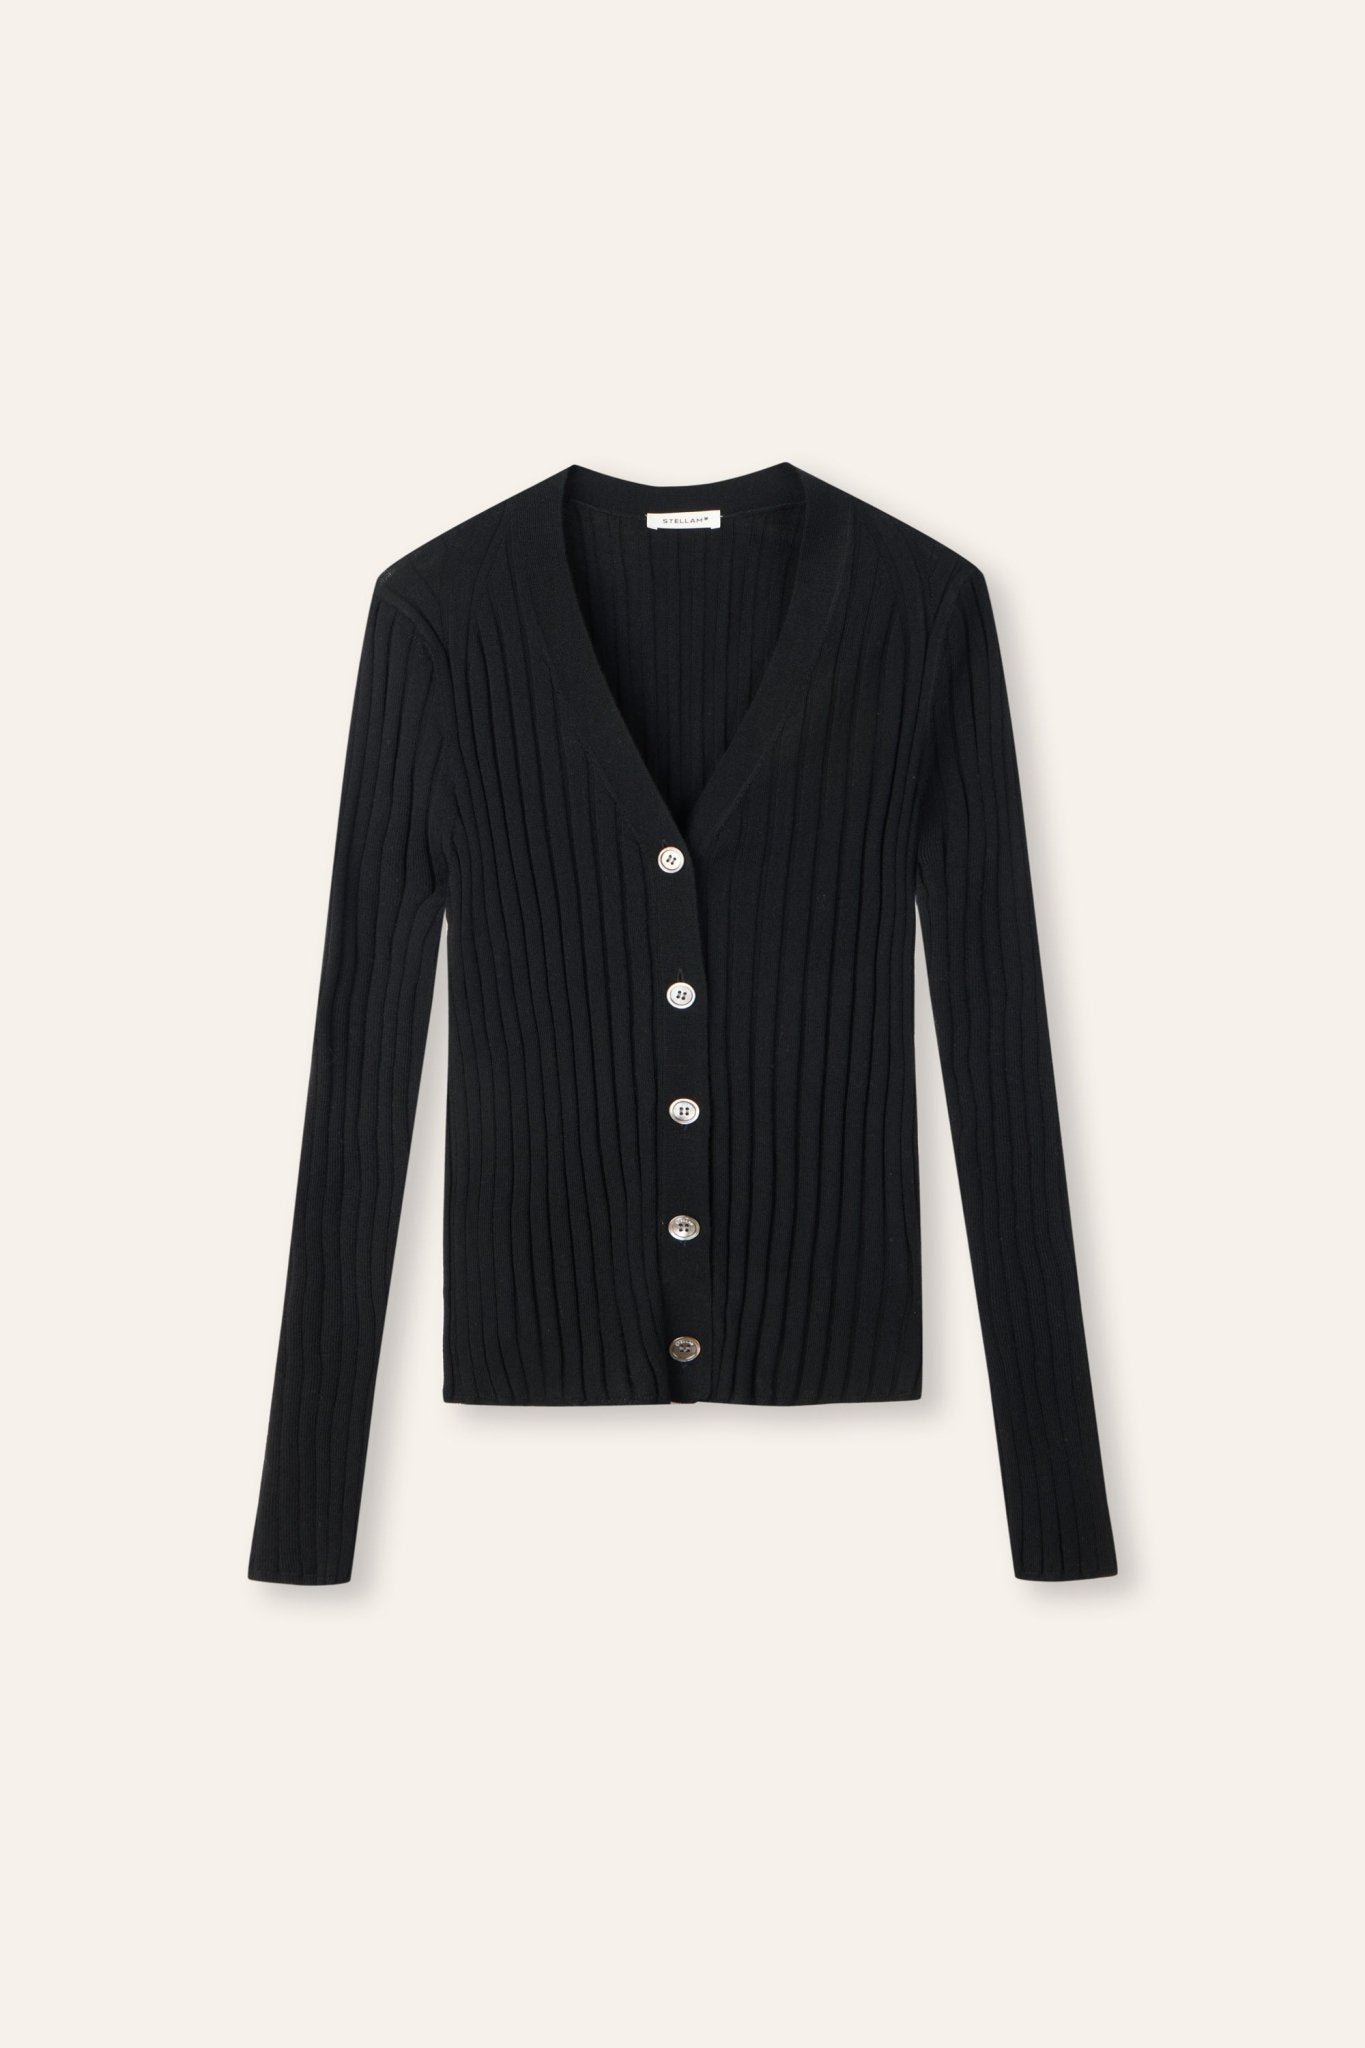 WENDY merino wool slim-fit cardigan (Black) - STELLAM